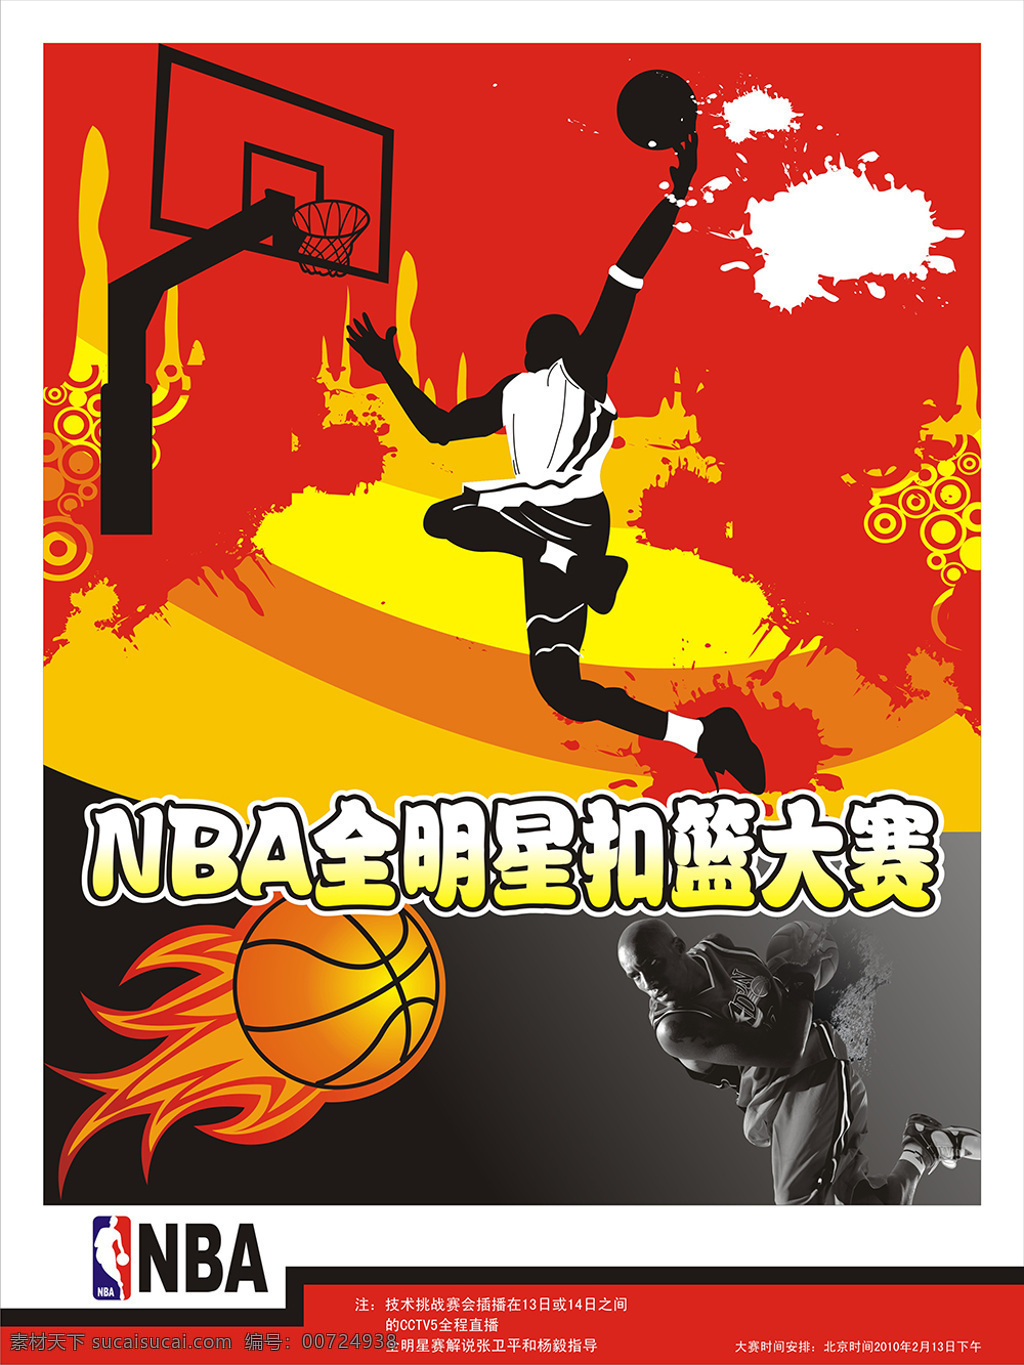 nba 全 明星 扣篮大赛 高清 全明星 海报 运动 篮球 宣传单 红色